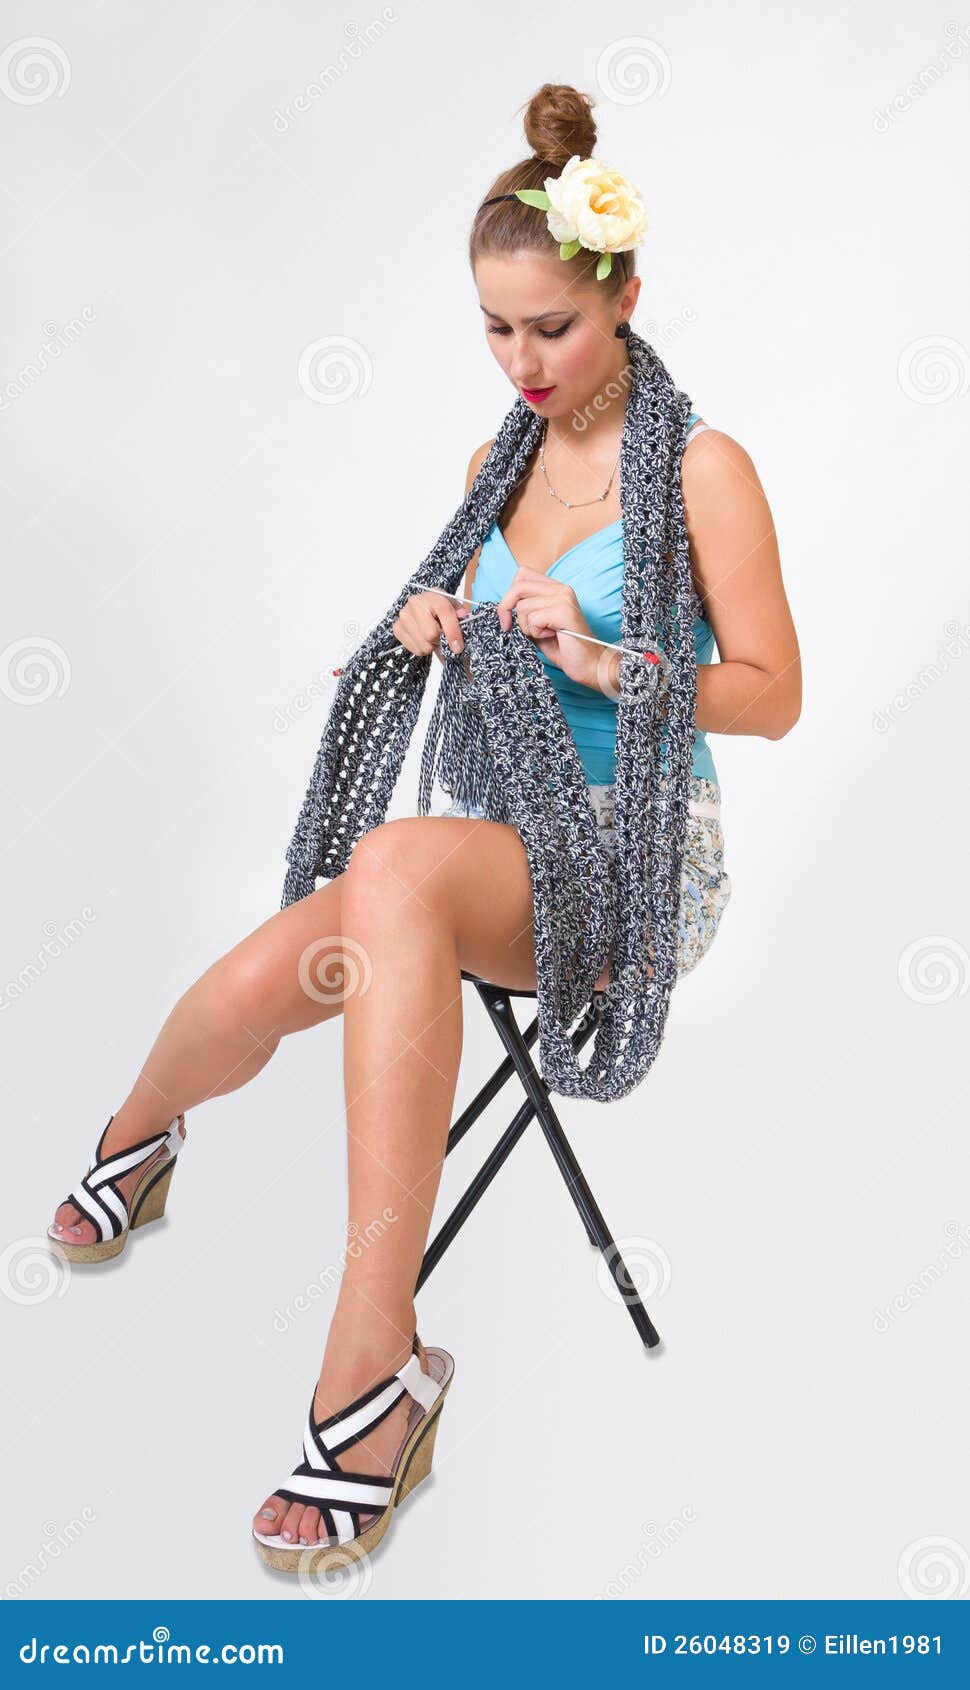 Beautiful Fashion Pin Up Woman Knitting Scarf Royalty Free